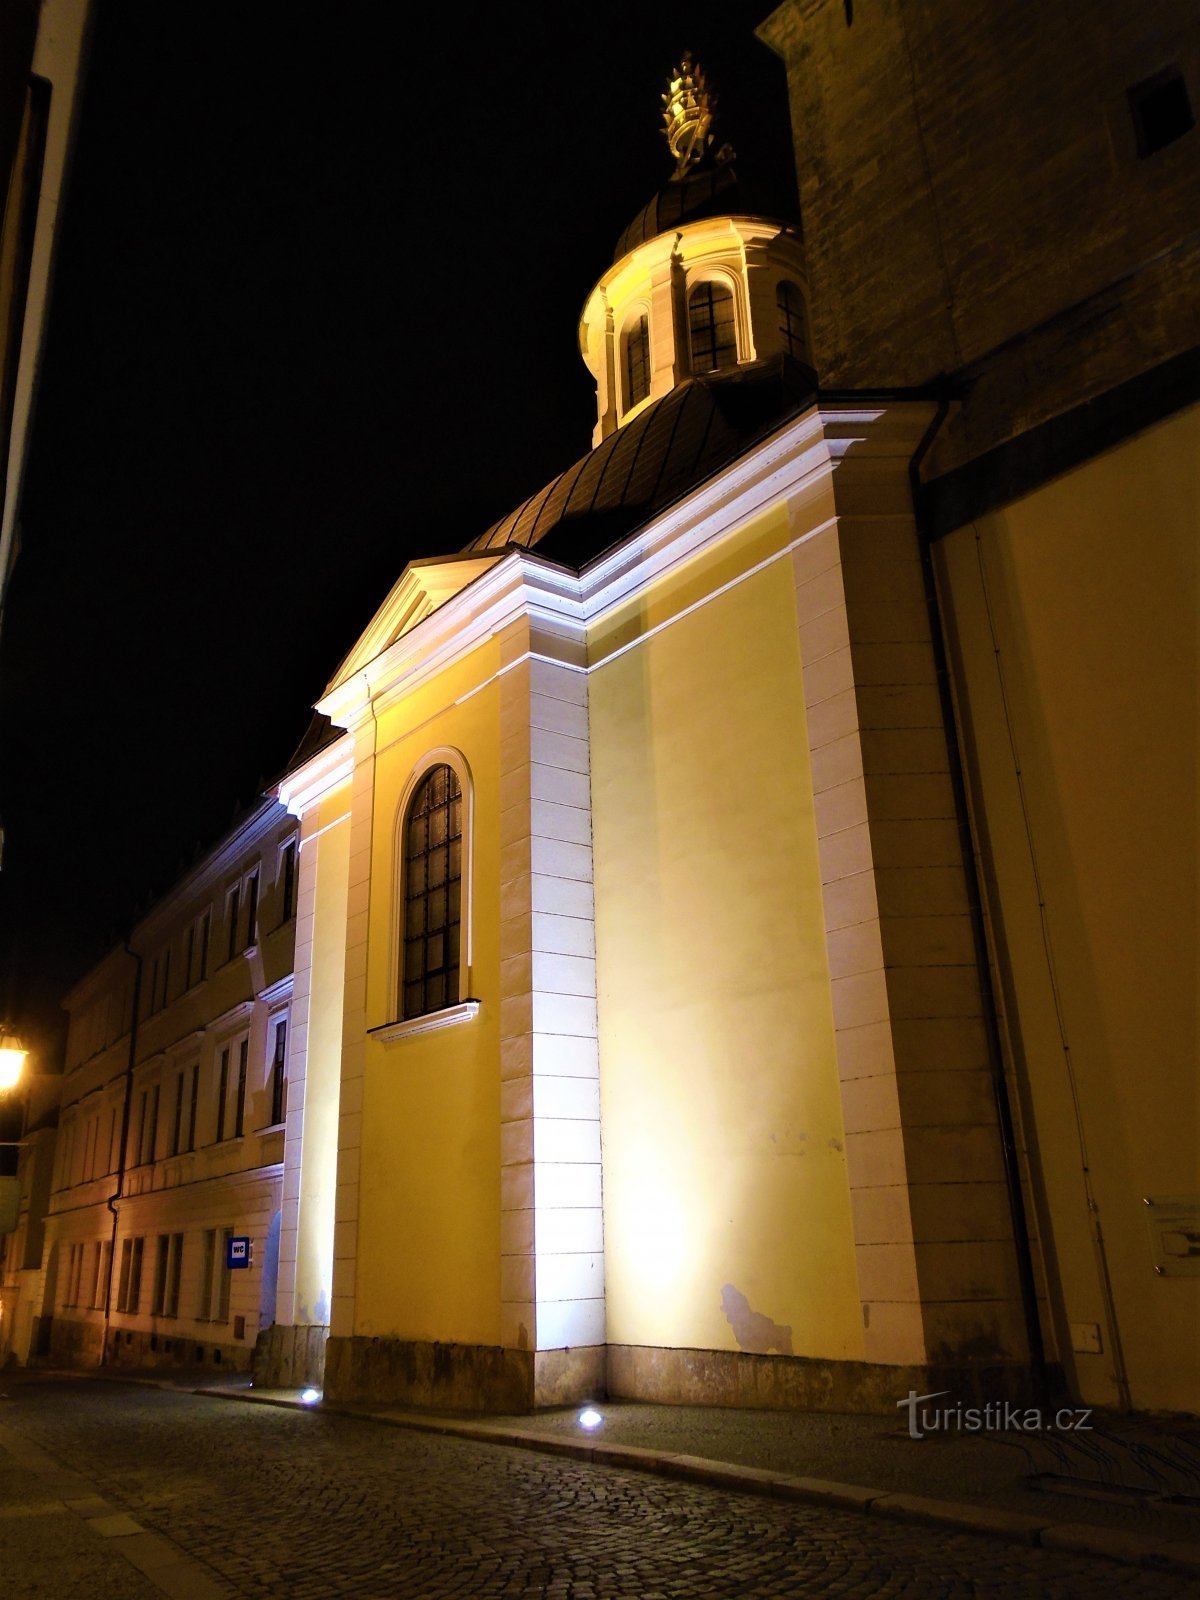 Capela de S. Klement, Papa e Mártir (Hradec Králové, 13.12.2020/XNUMX/XNUMX)